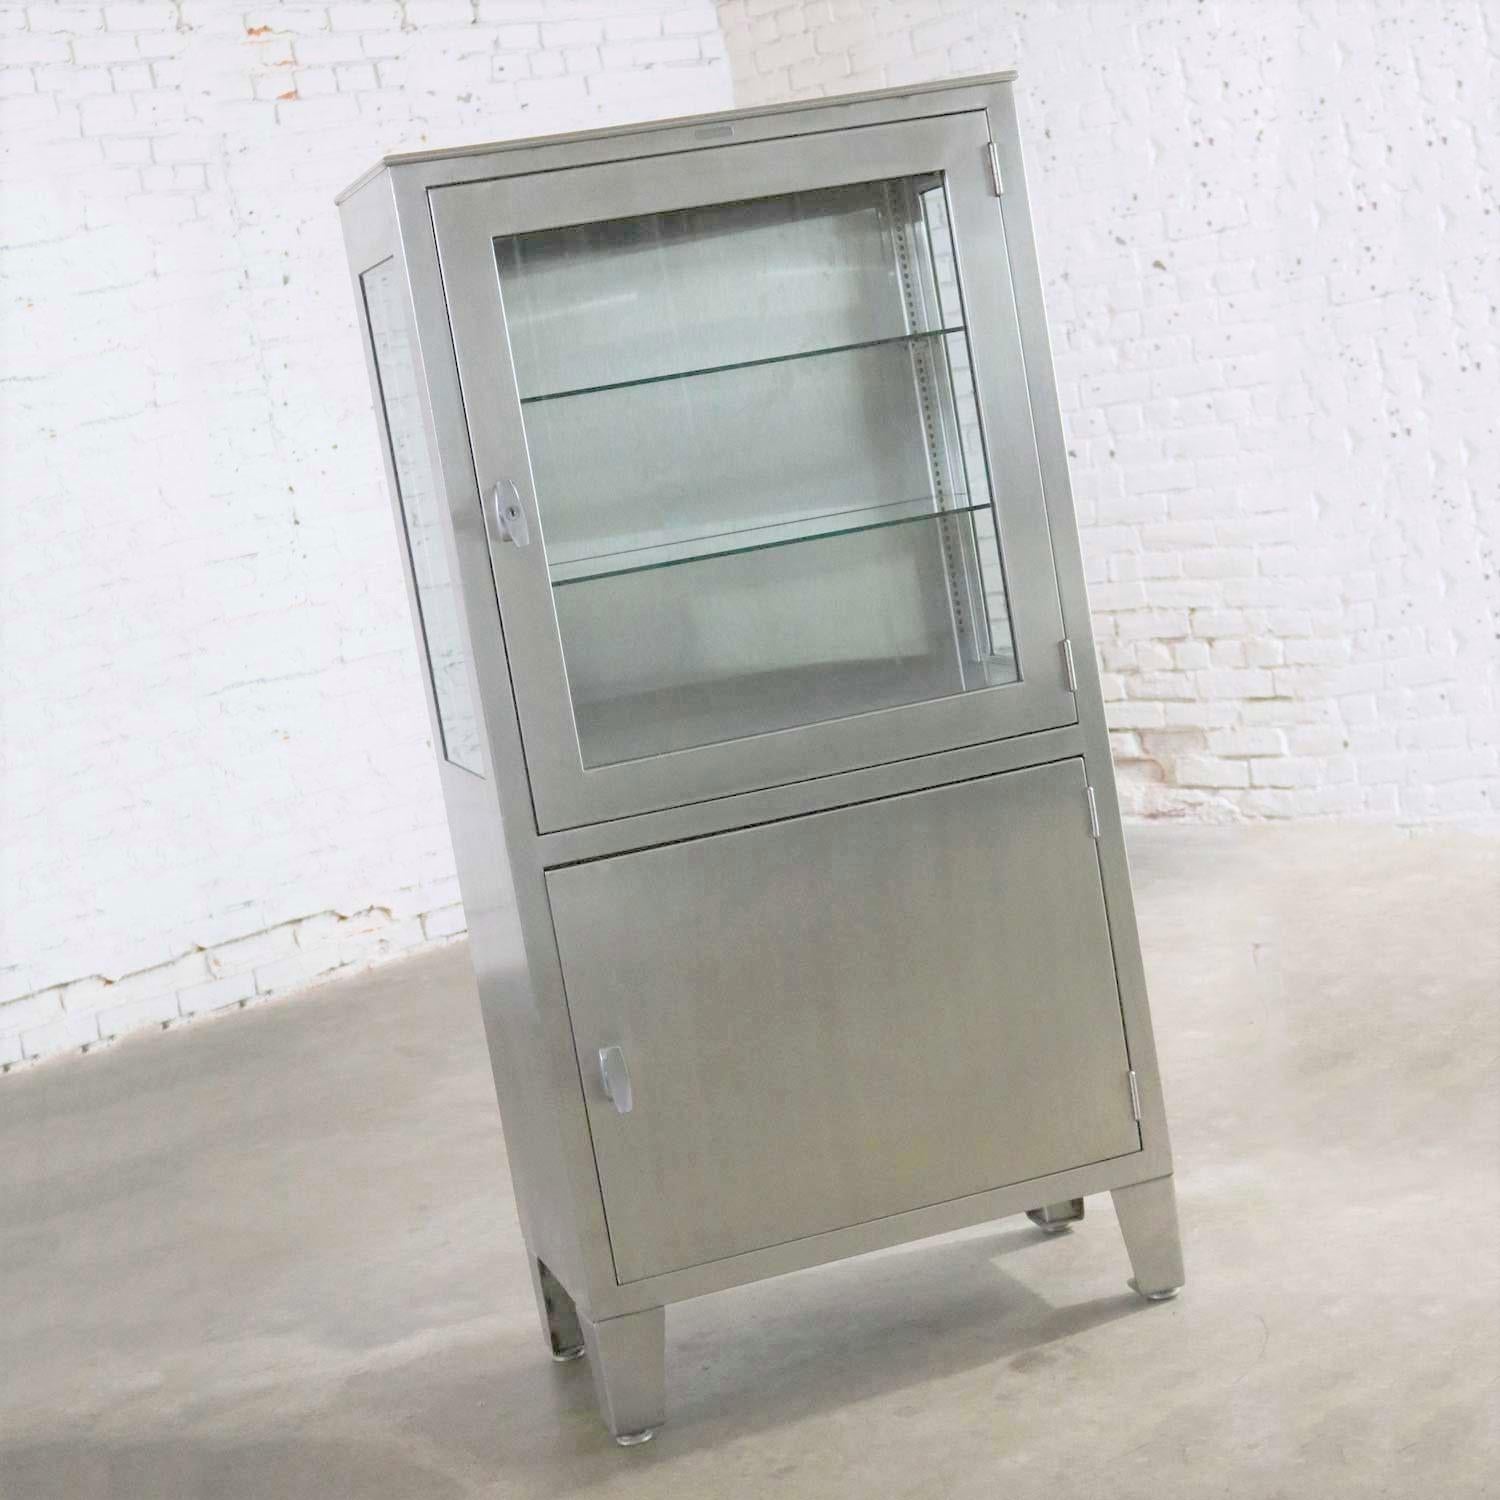 American Vintage Petite Stainless Steel Industrial or Medical Display Storage Cabinet PR